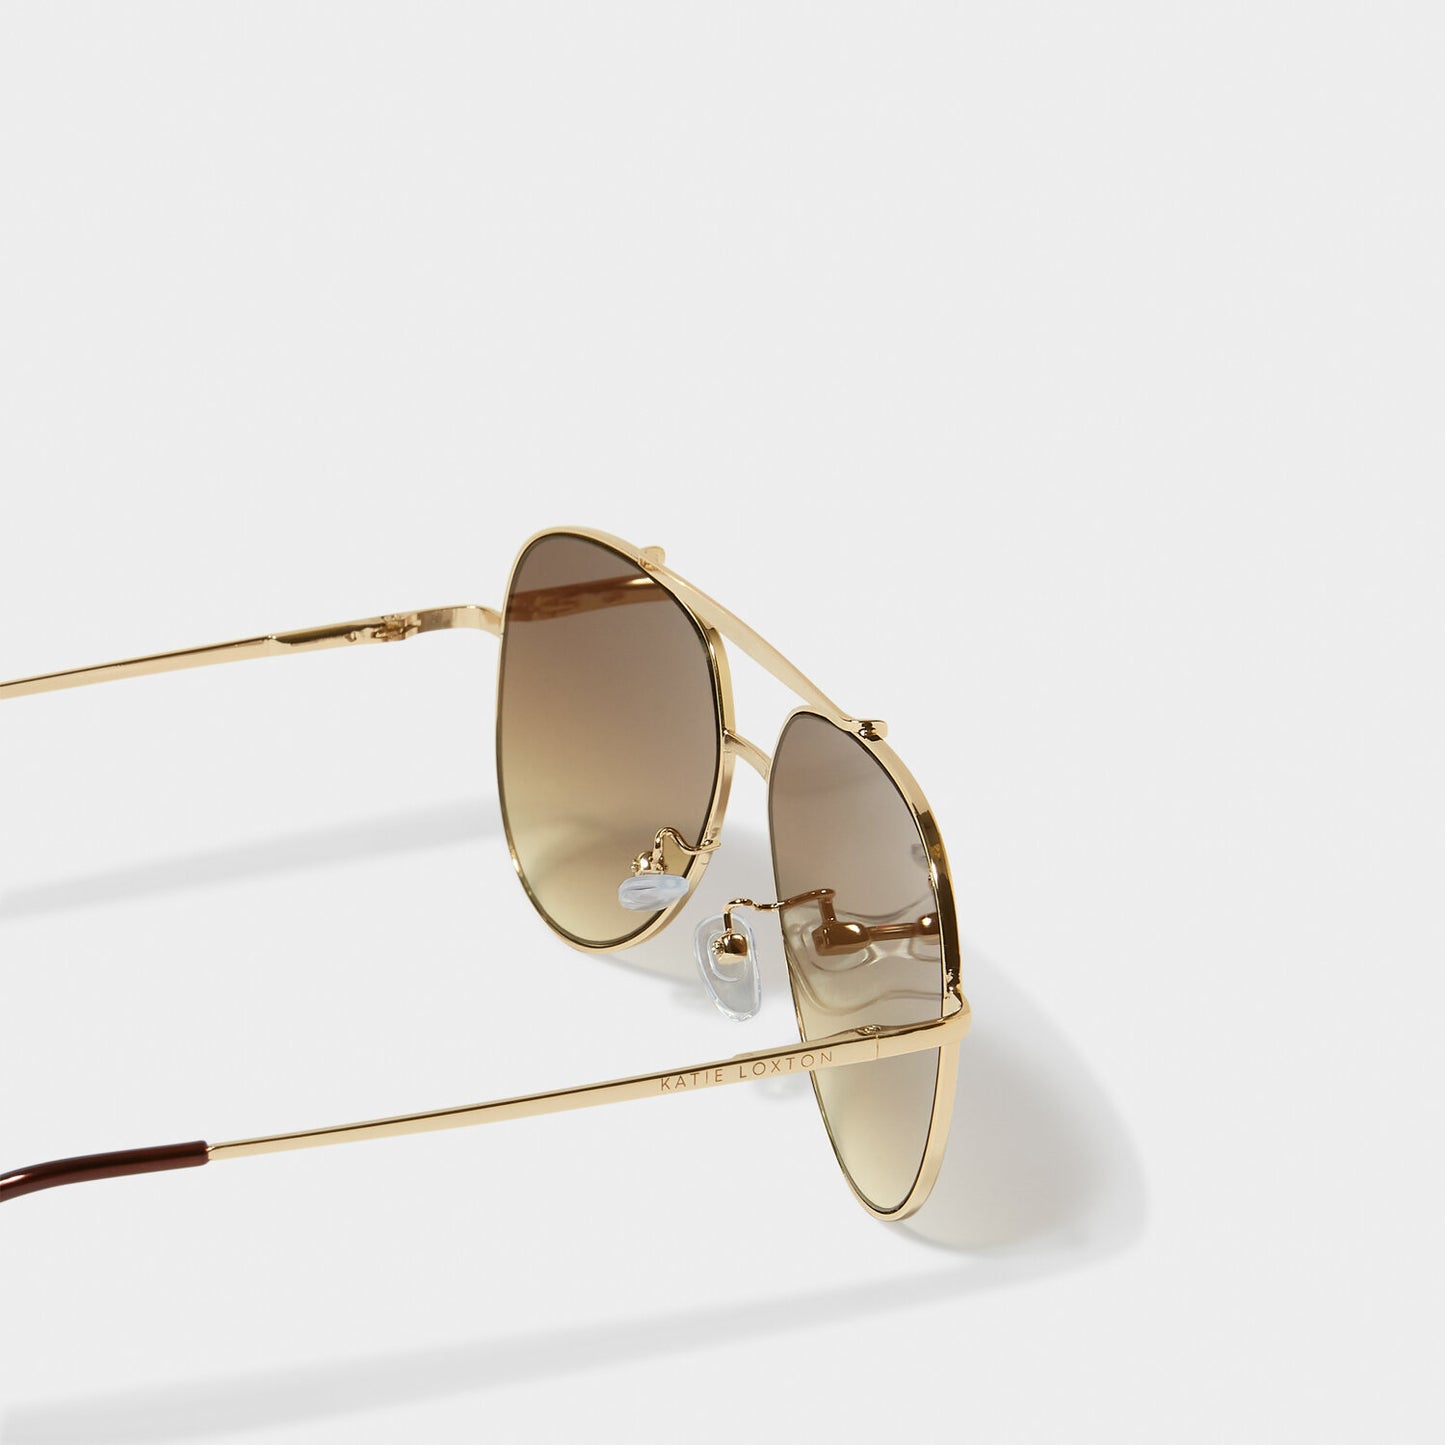 Bali Sunglasses in Gold Metal